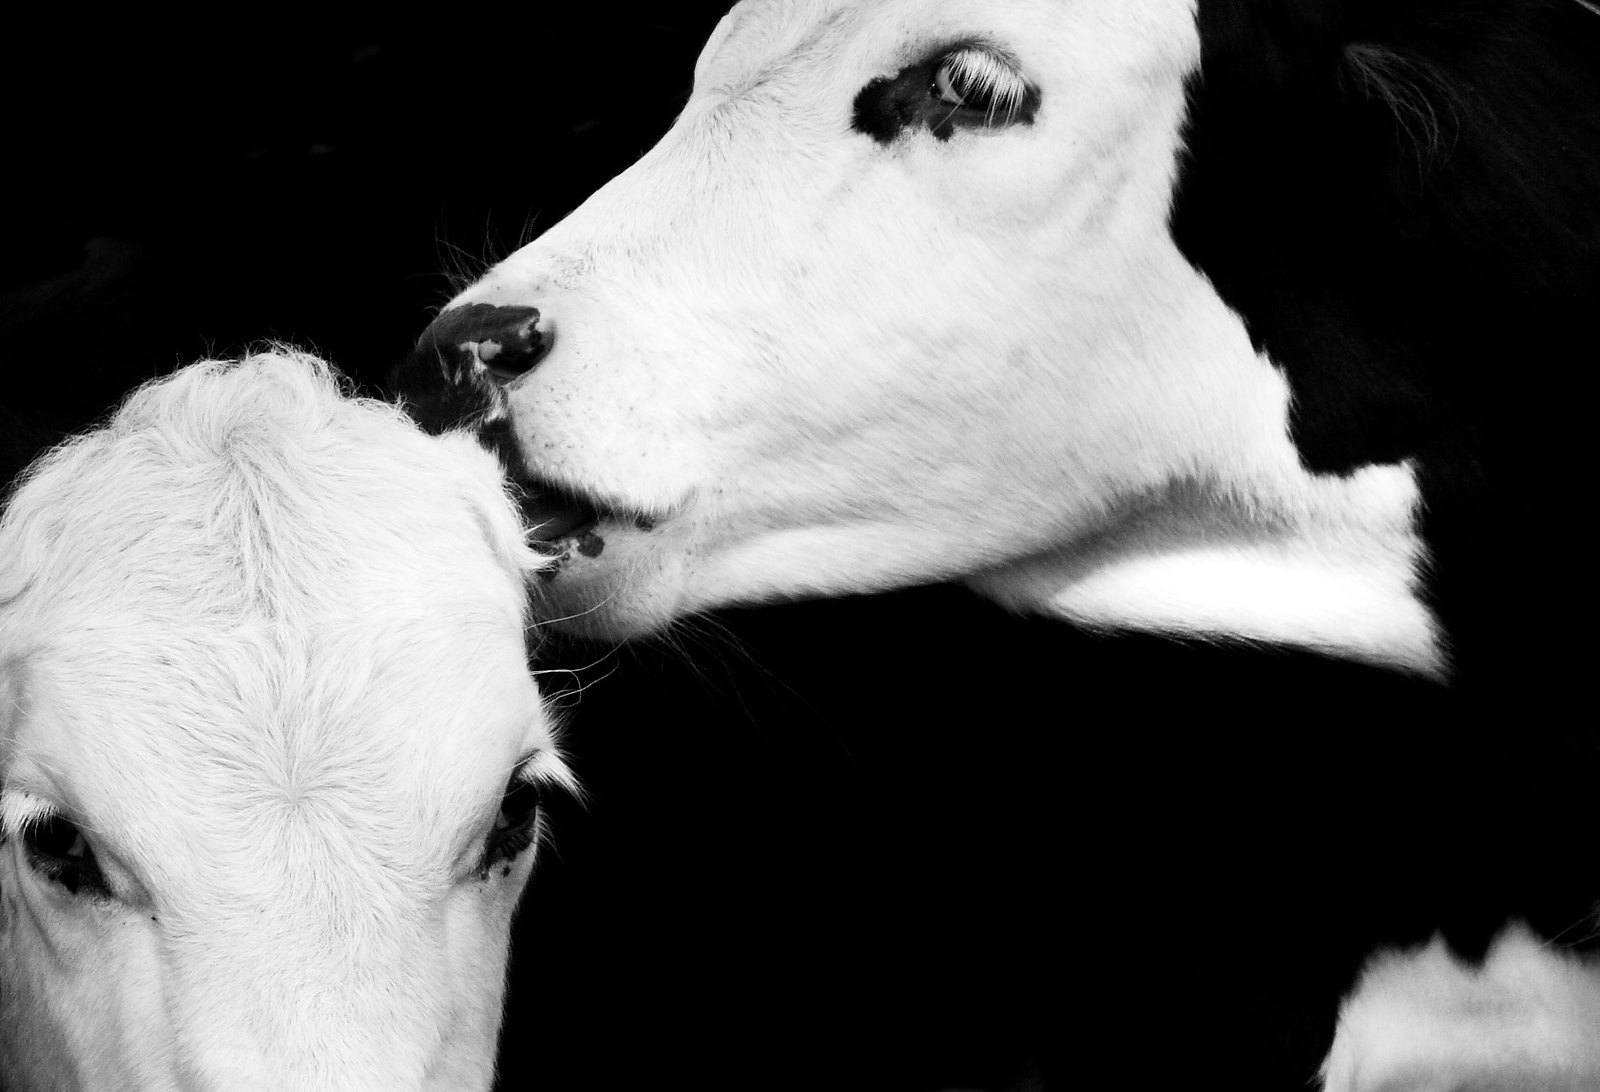 cows-flickr